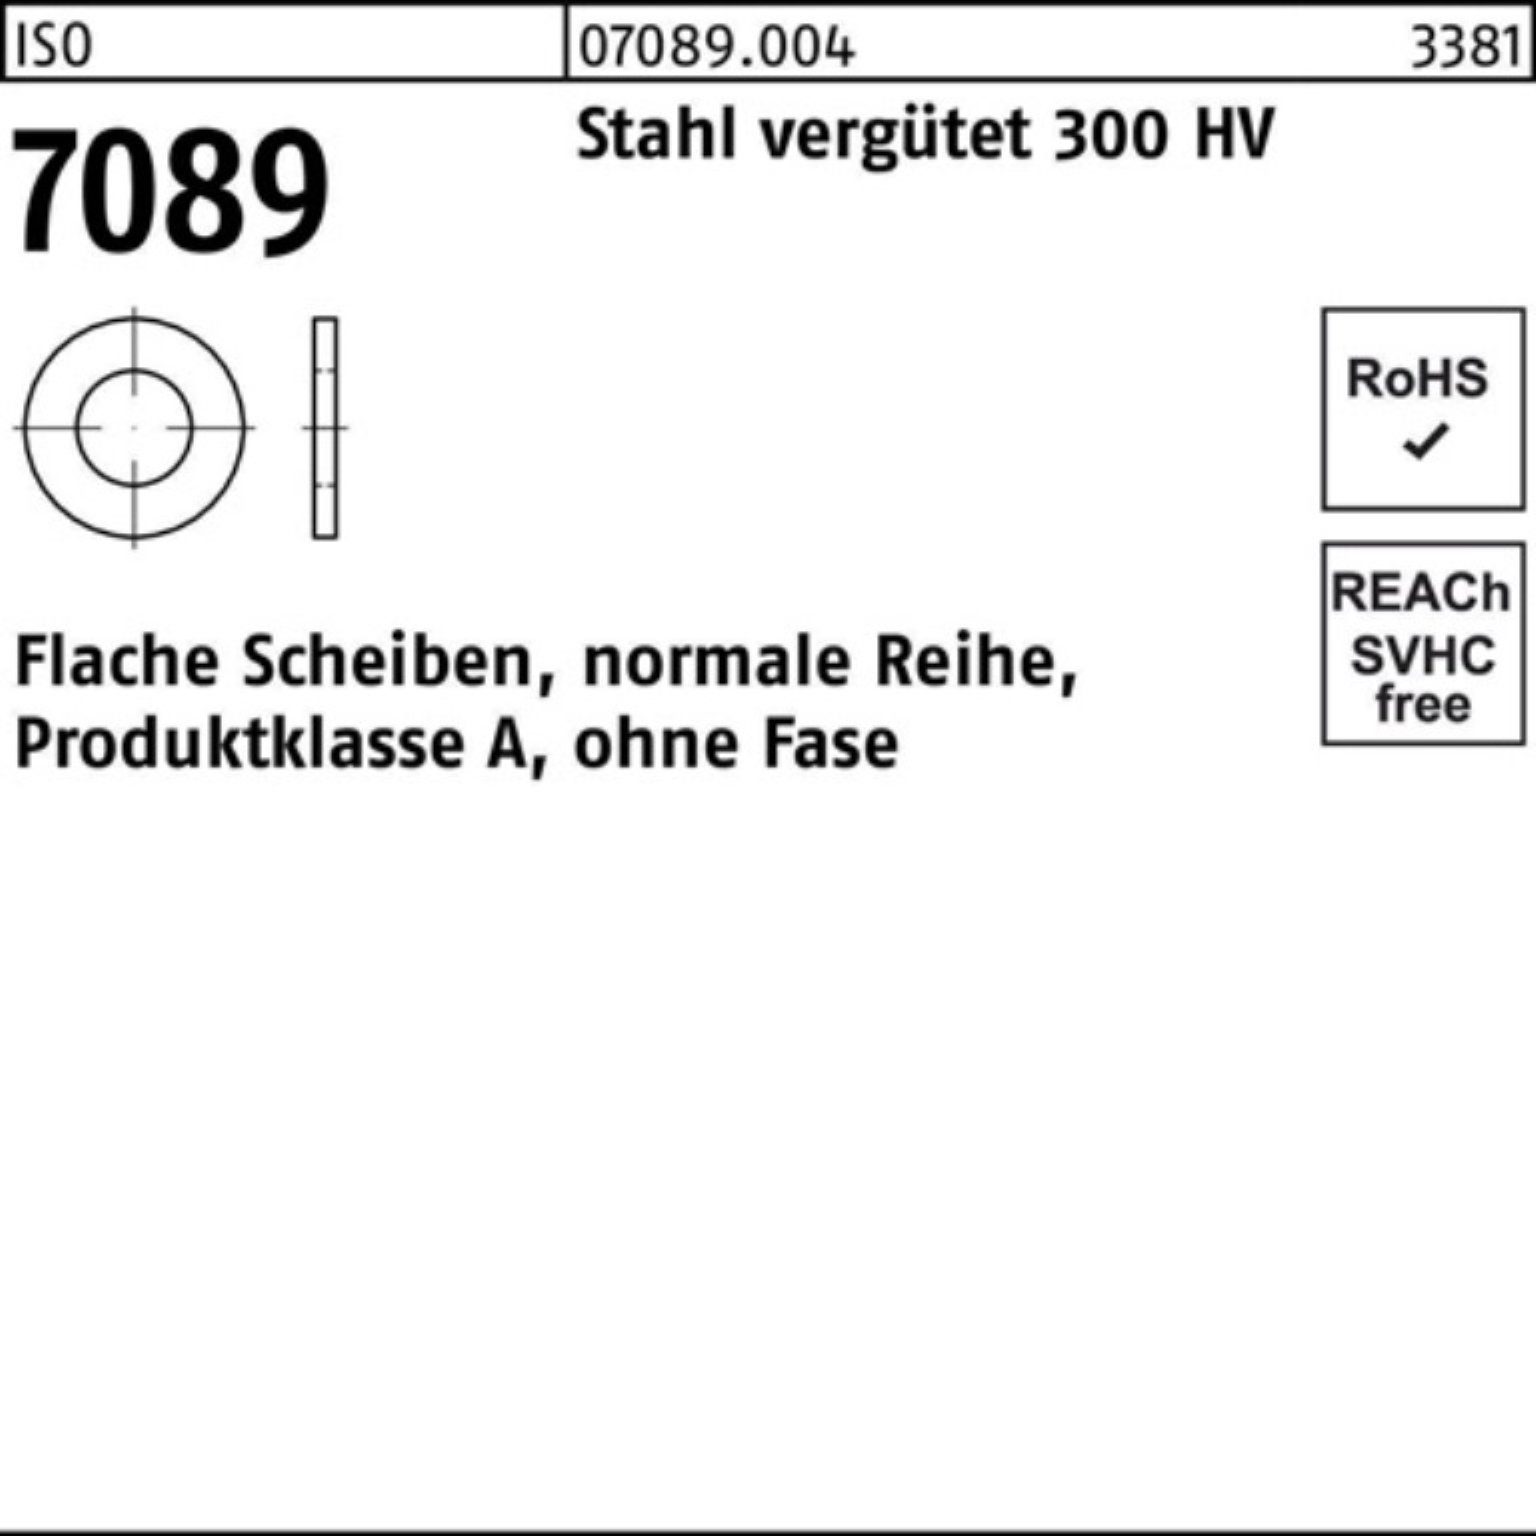 Unterlegscheibe 5 Bufab ISO Unterlegscheibe Pack 100er 300 HV o.Fase Stahl 7089 vergütet 30